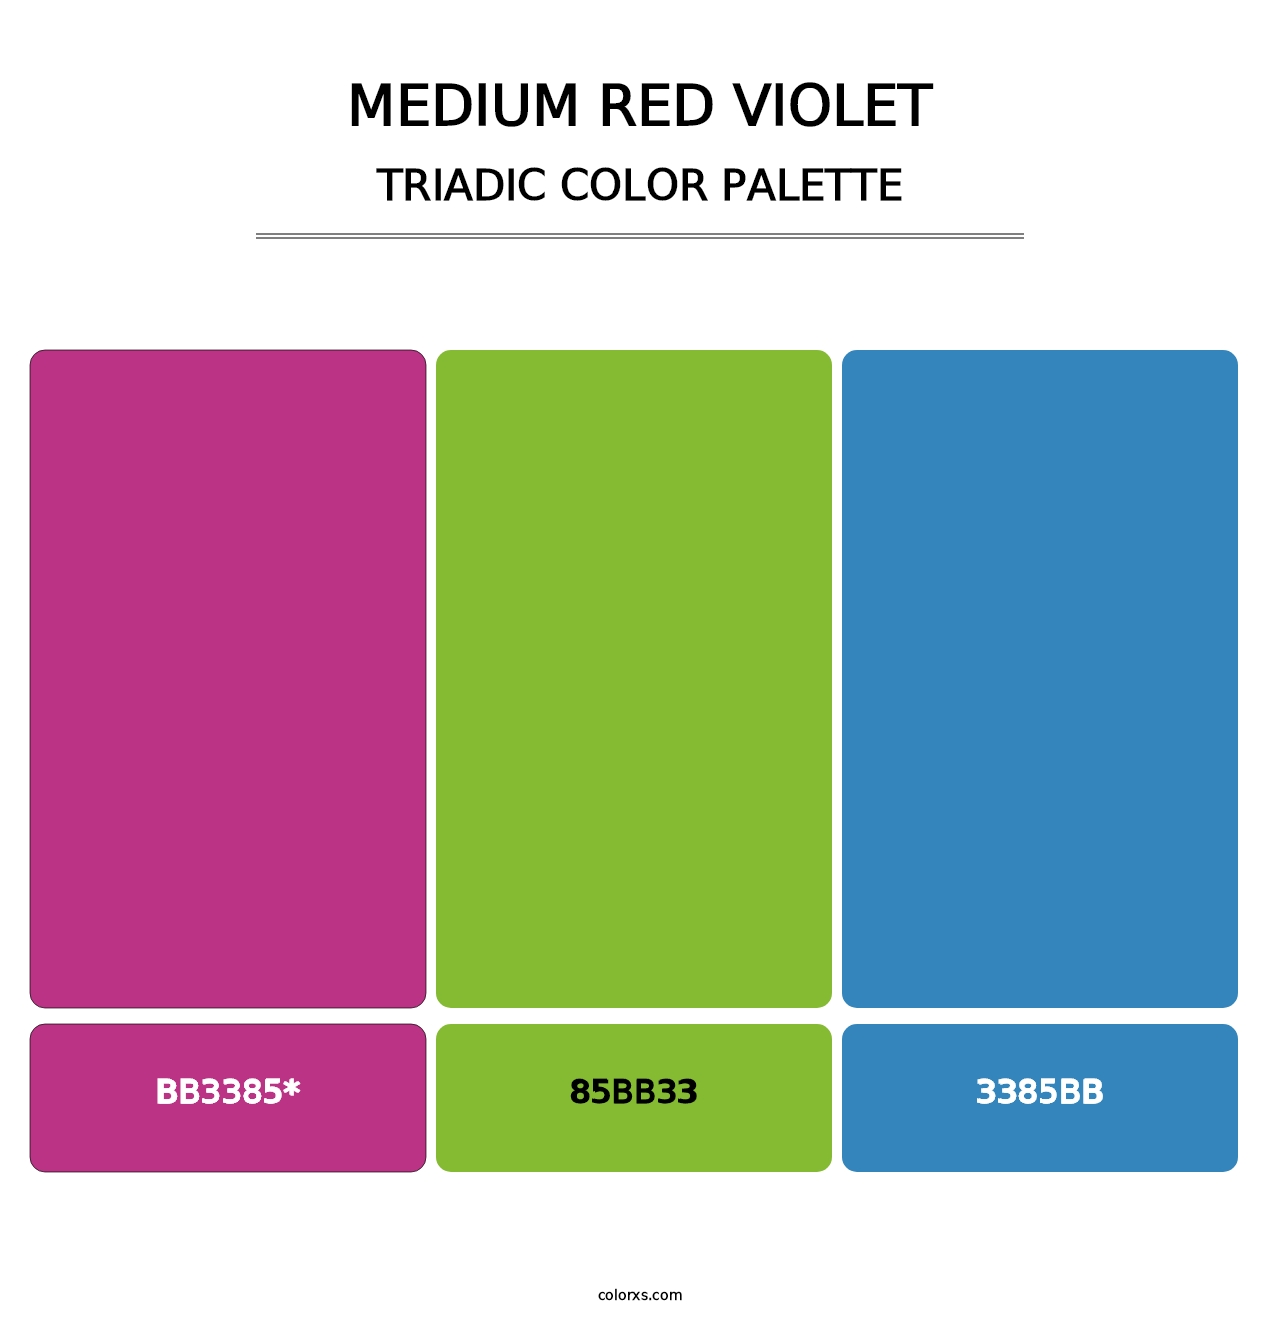 Medium Red Violet - Triadic Color Palette